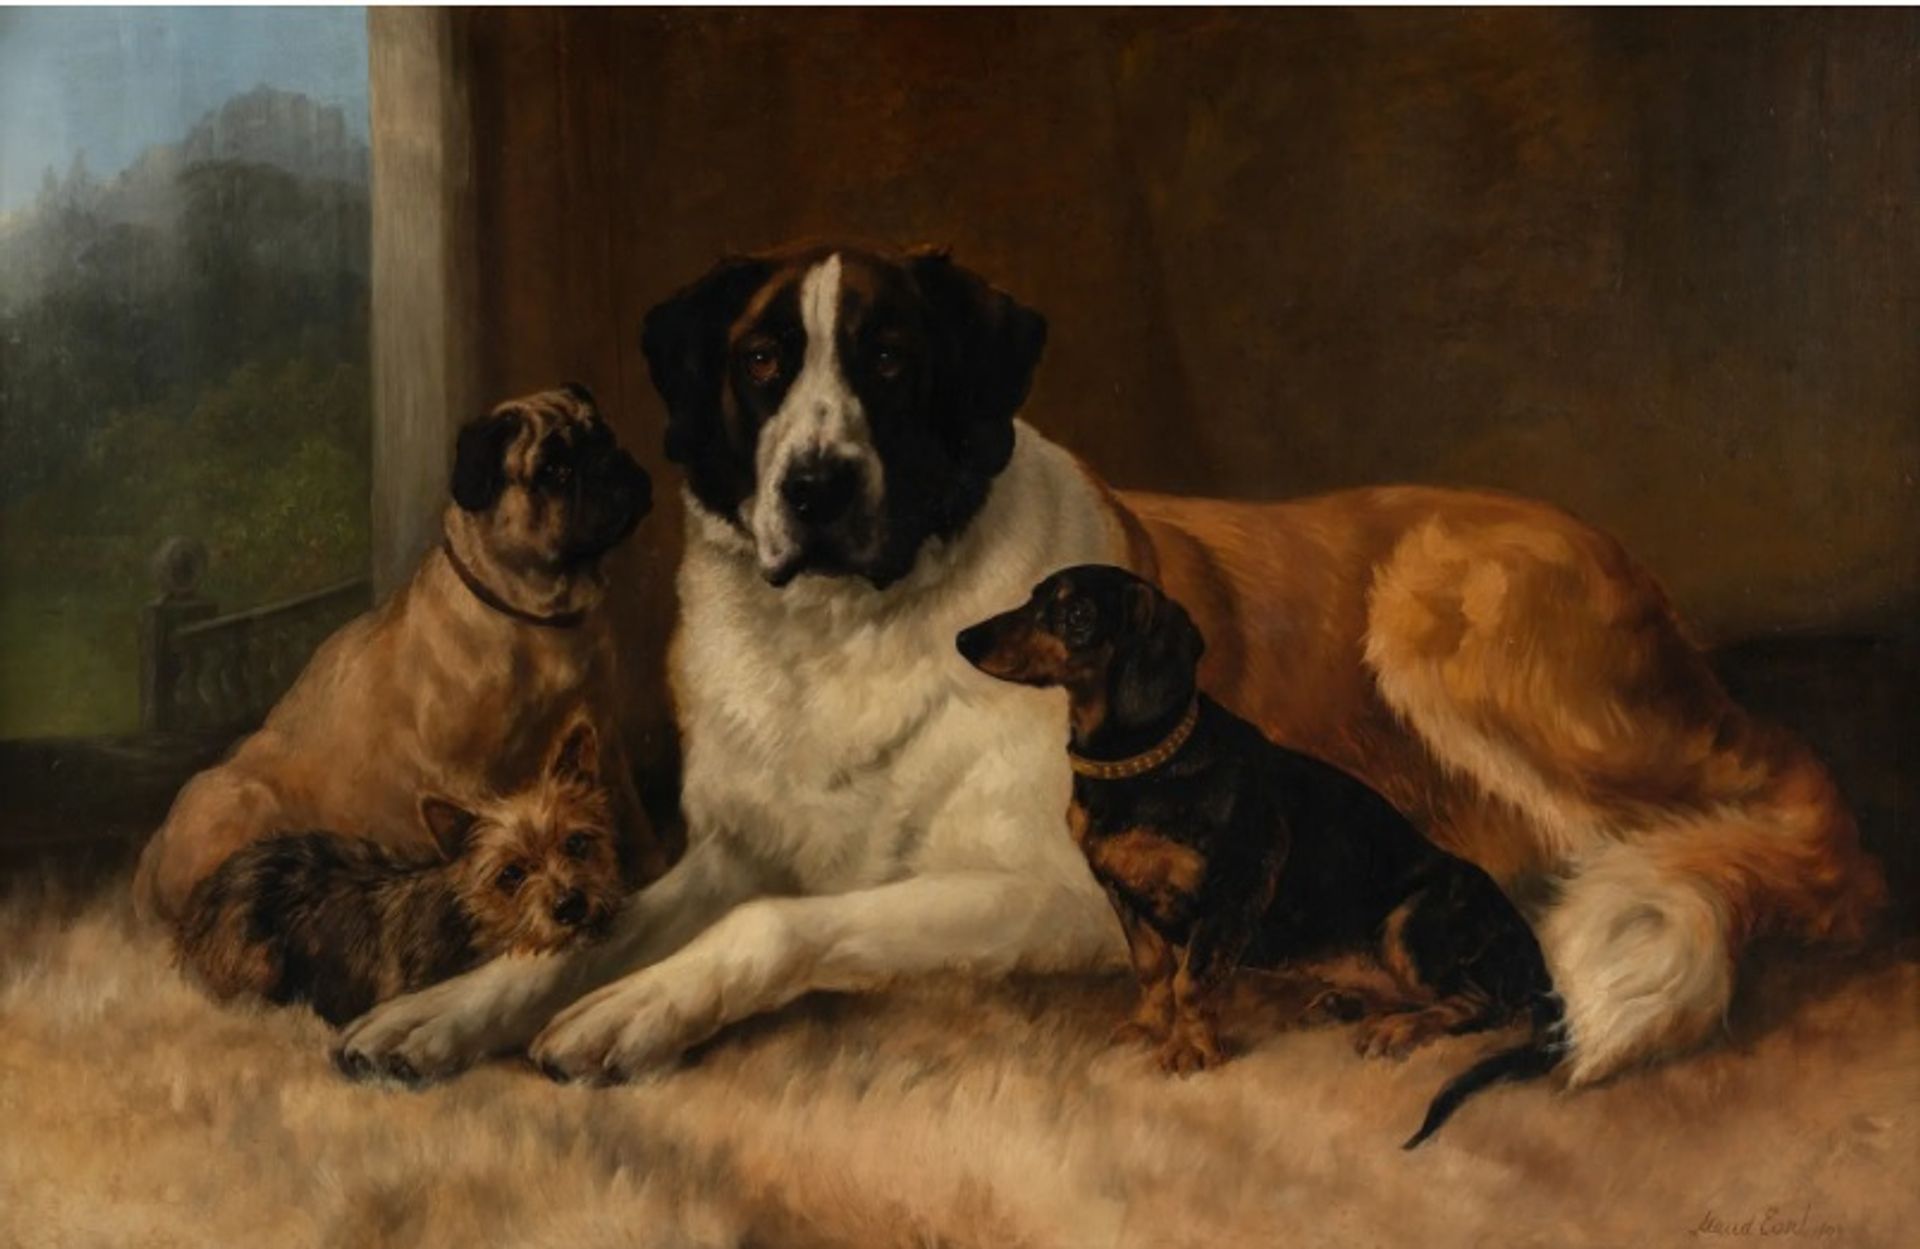 מוד ארל, "ארבעה חברים", 1893

באדיבות הינדמן